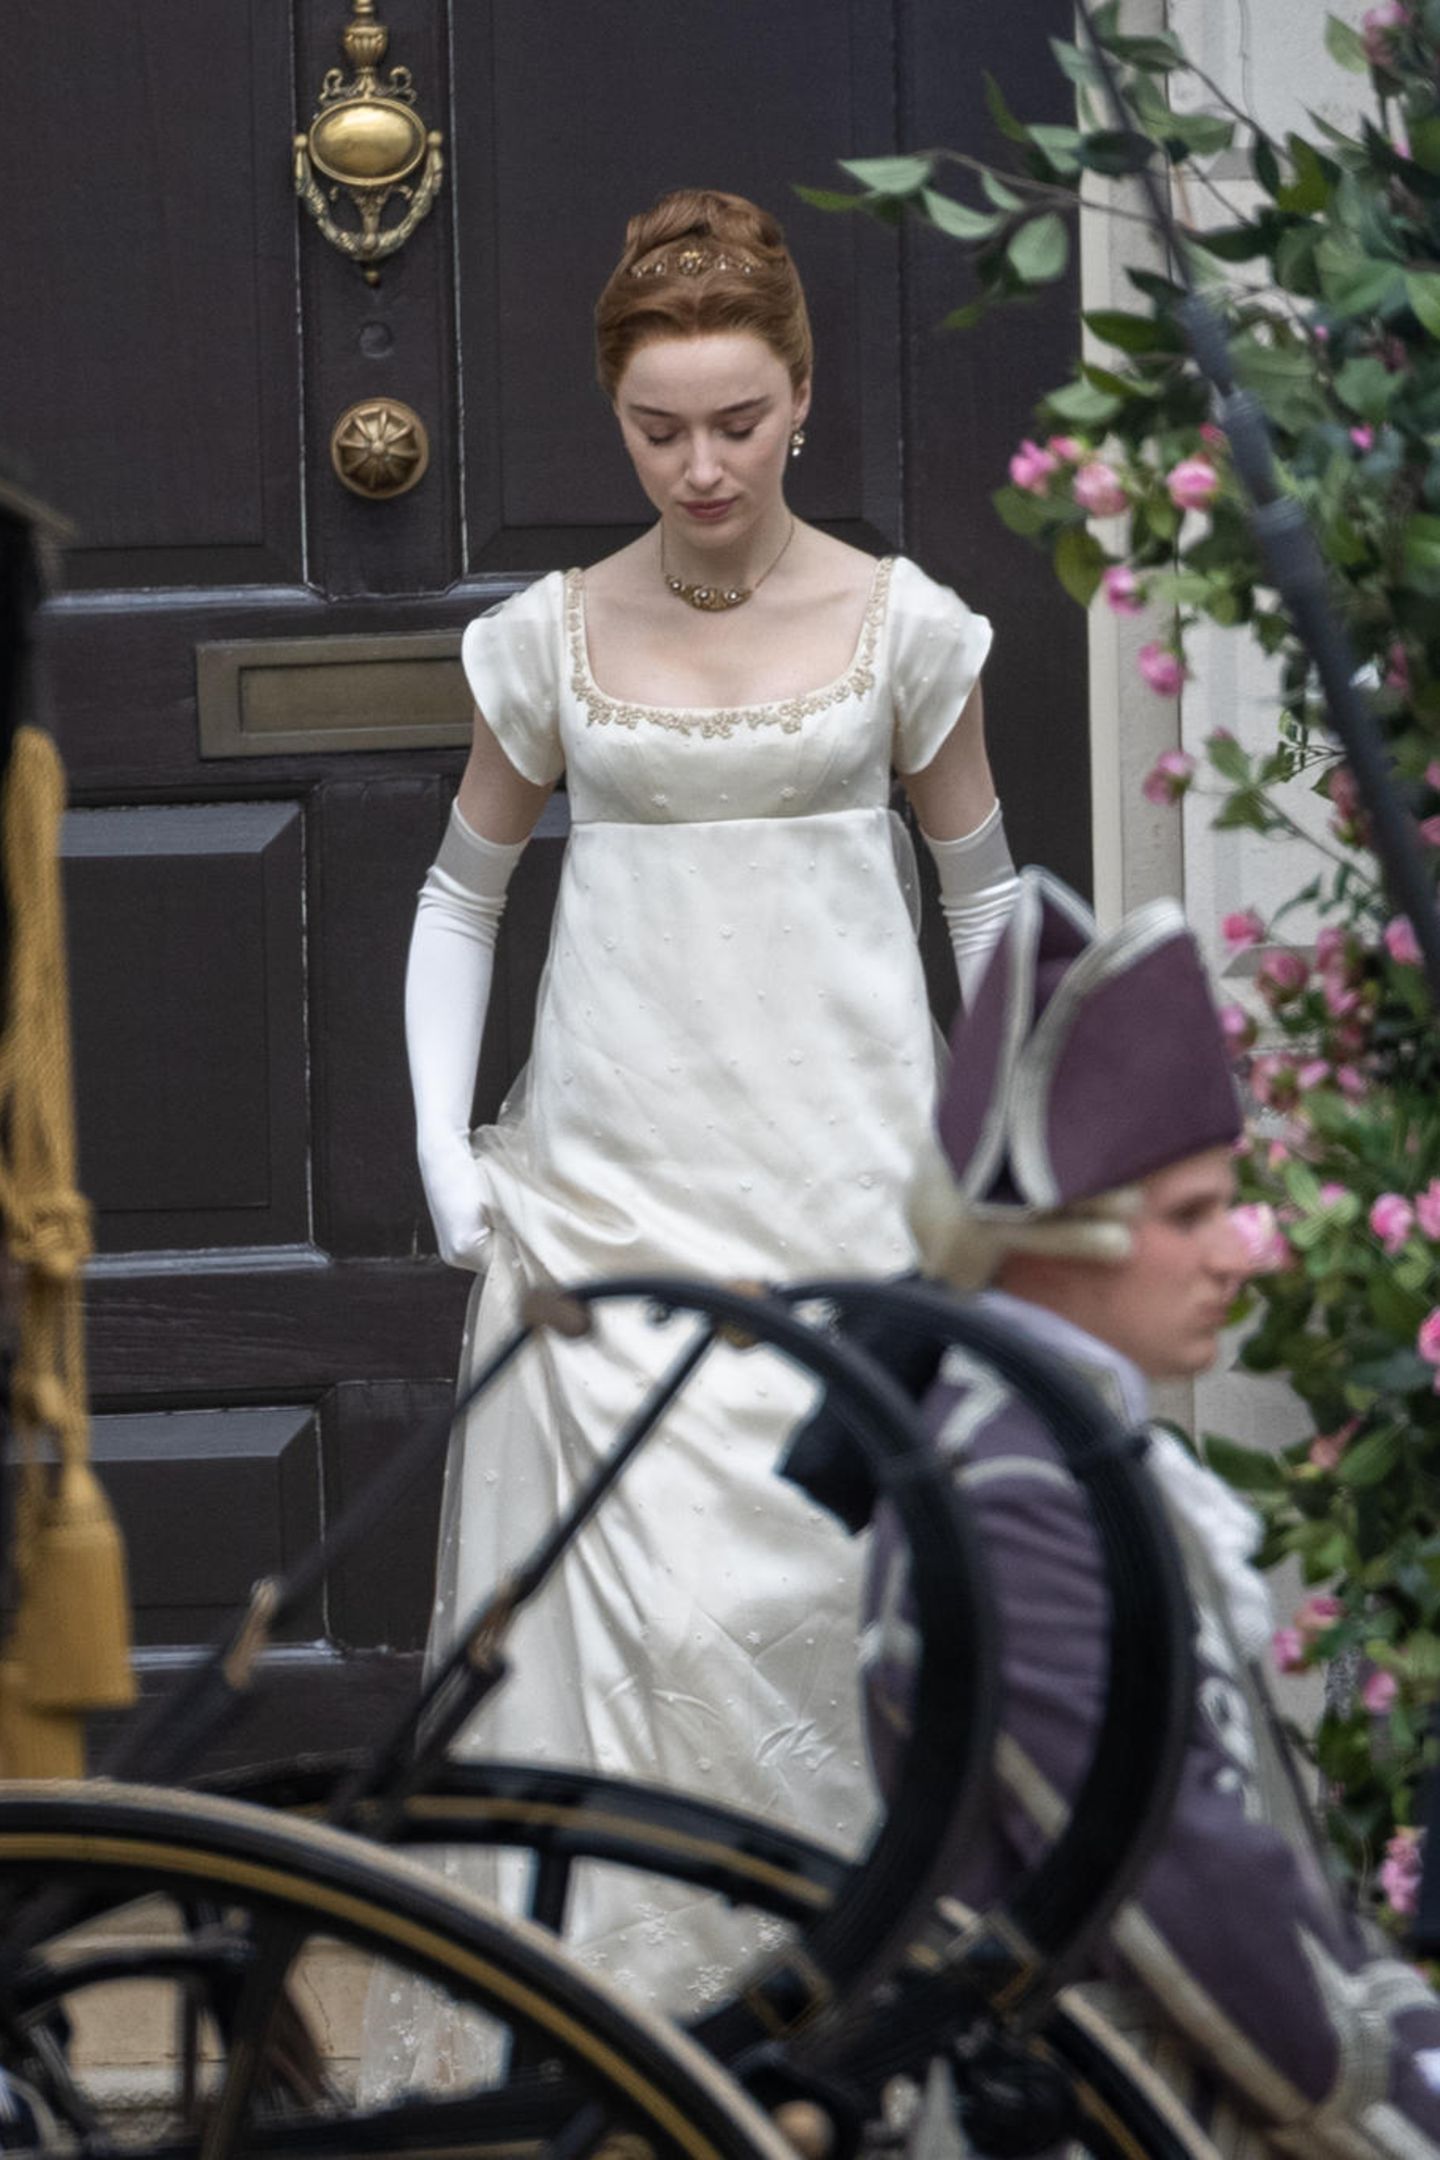 Sie ist zurück am Set. Schauspielerin Phoebe Dynevor zeigt sich elegant, wie es sich für ihre Rolle als Herzogin von Hastings gehört, bei den Dreharbeiten der zweiten Staffel von "Bridgerton" und wartet auf ihren Einsatz für die nächste Szene. 